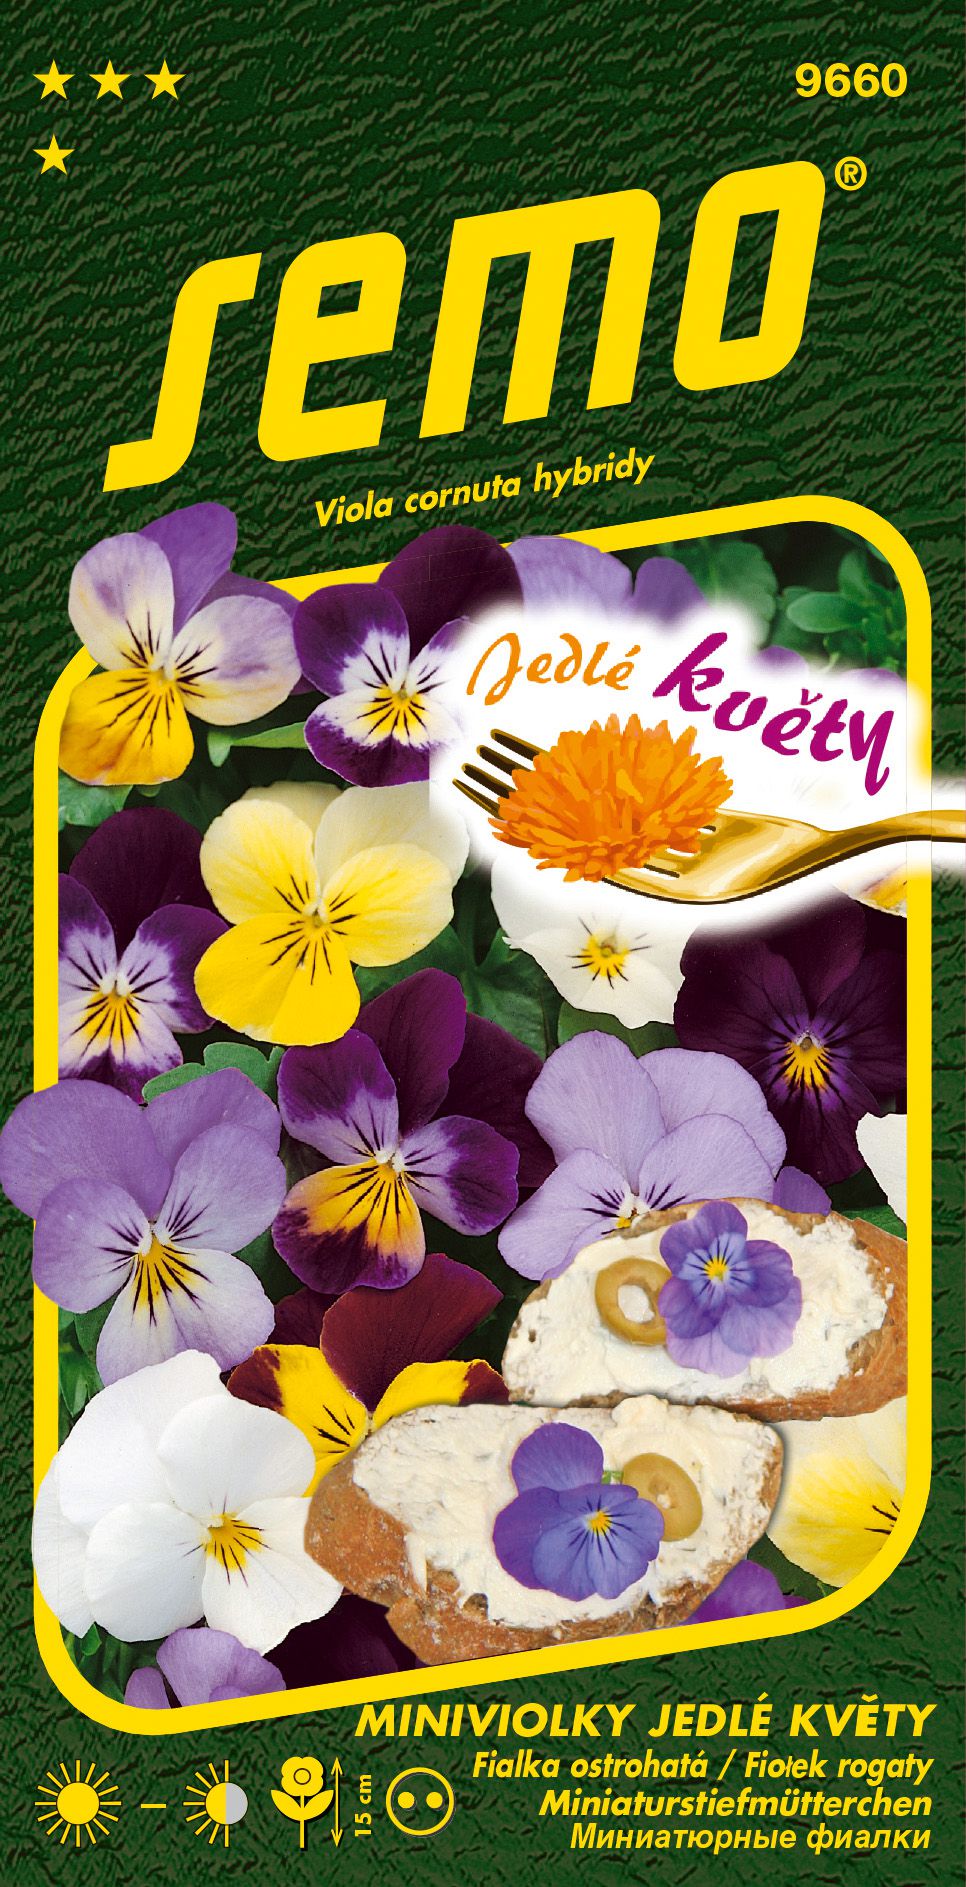 Miniviolka Jedlé květy